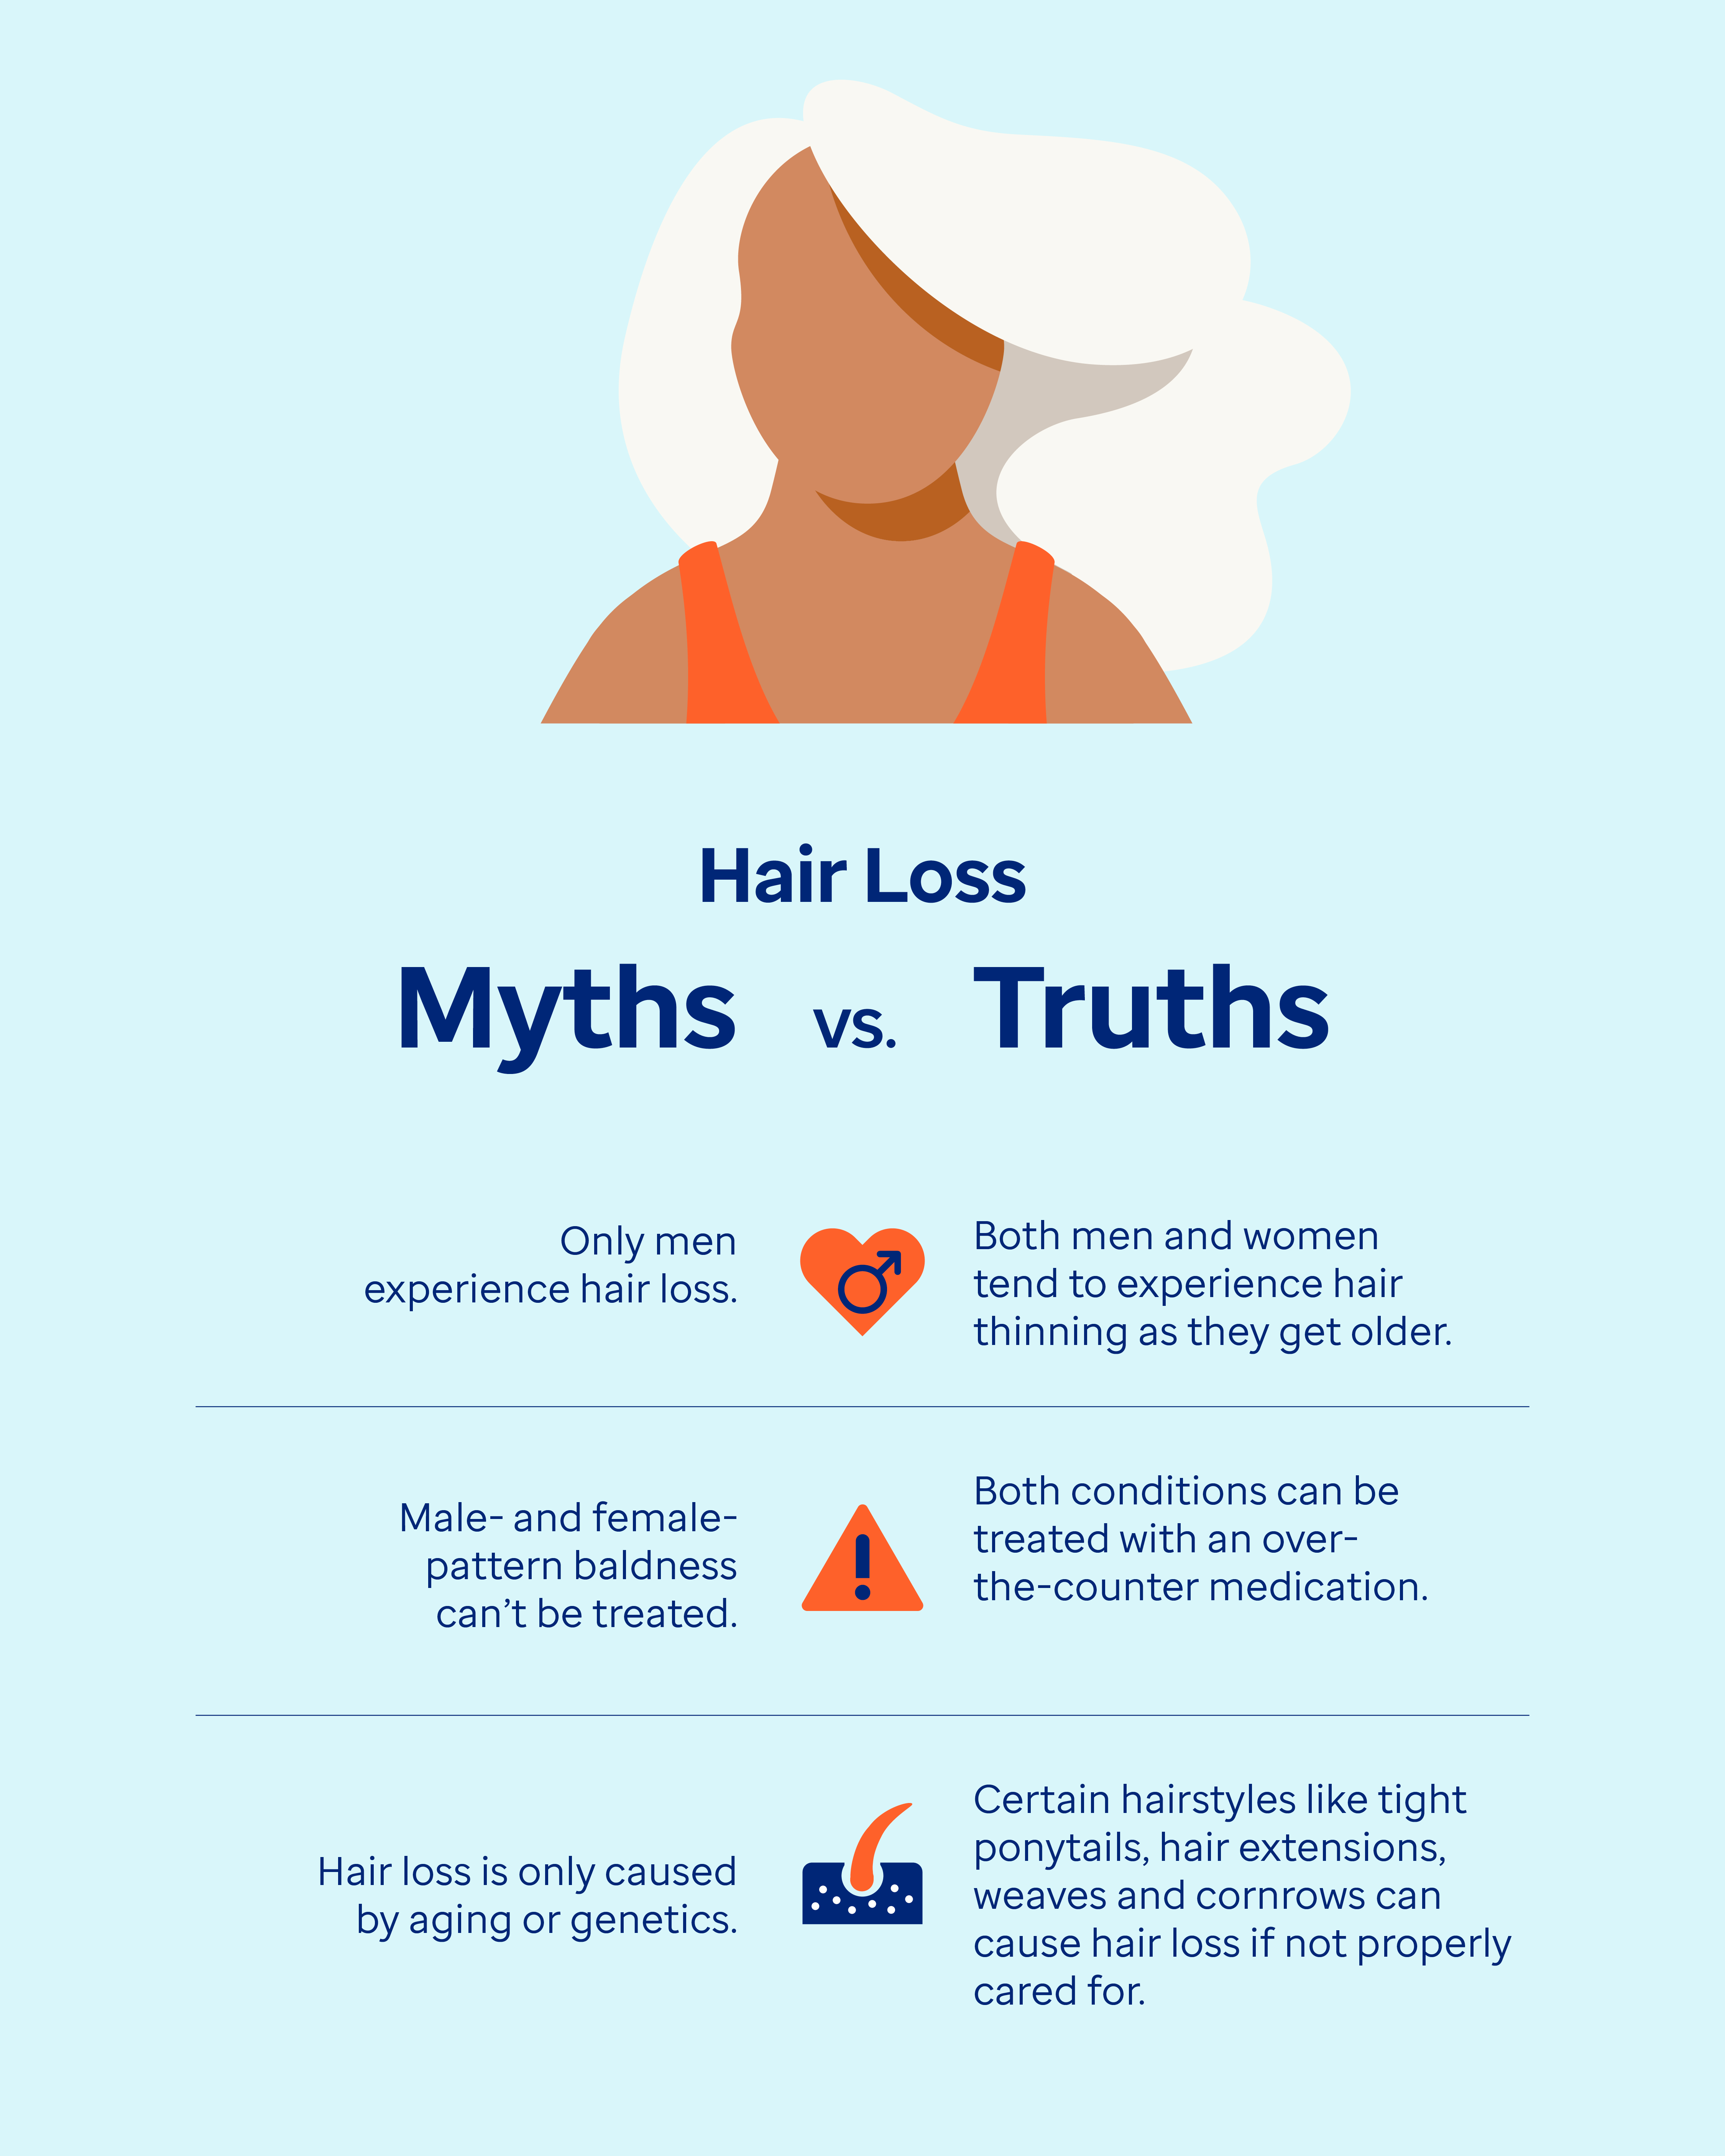 Hair loss myths